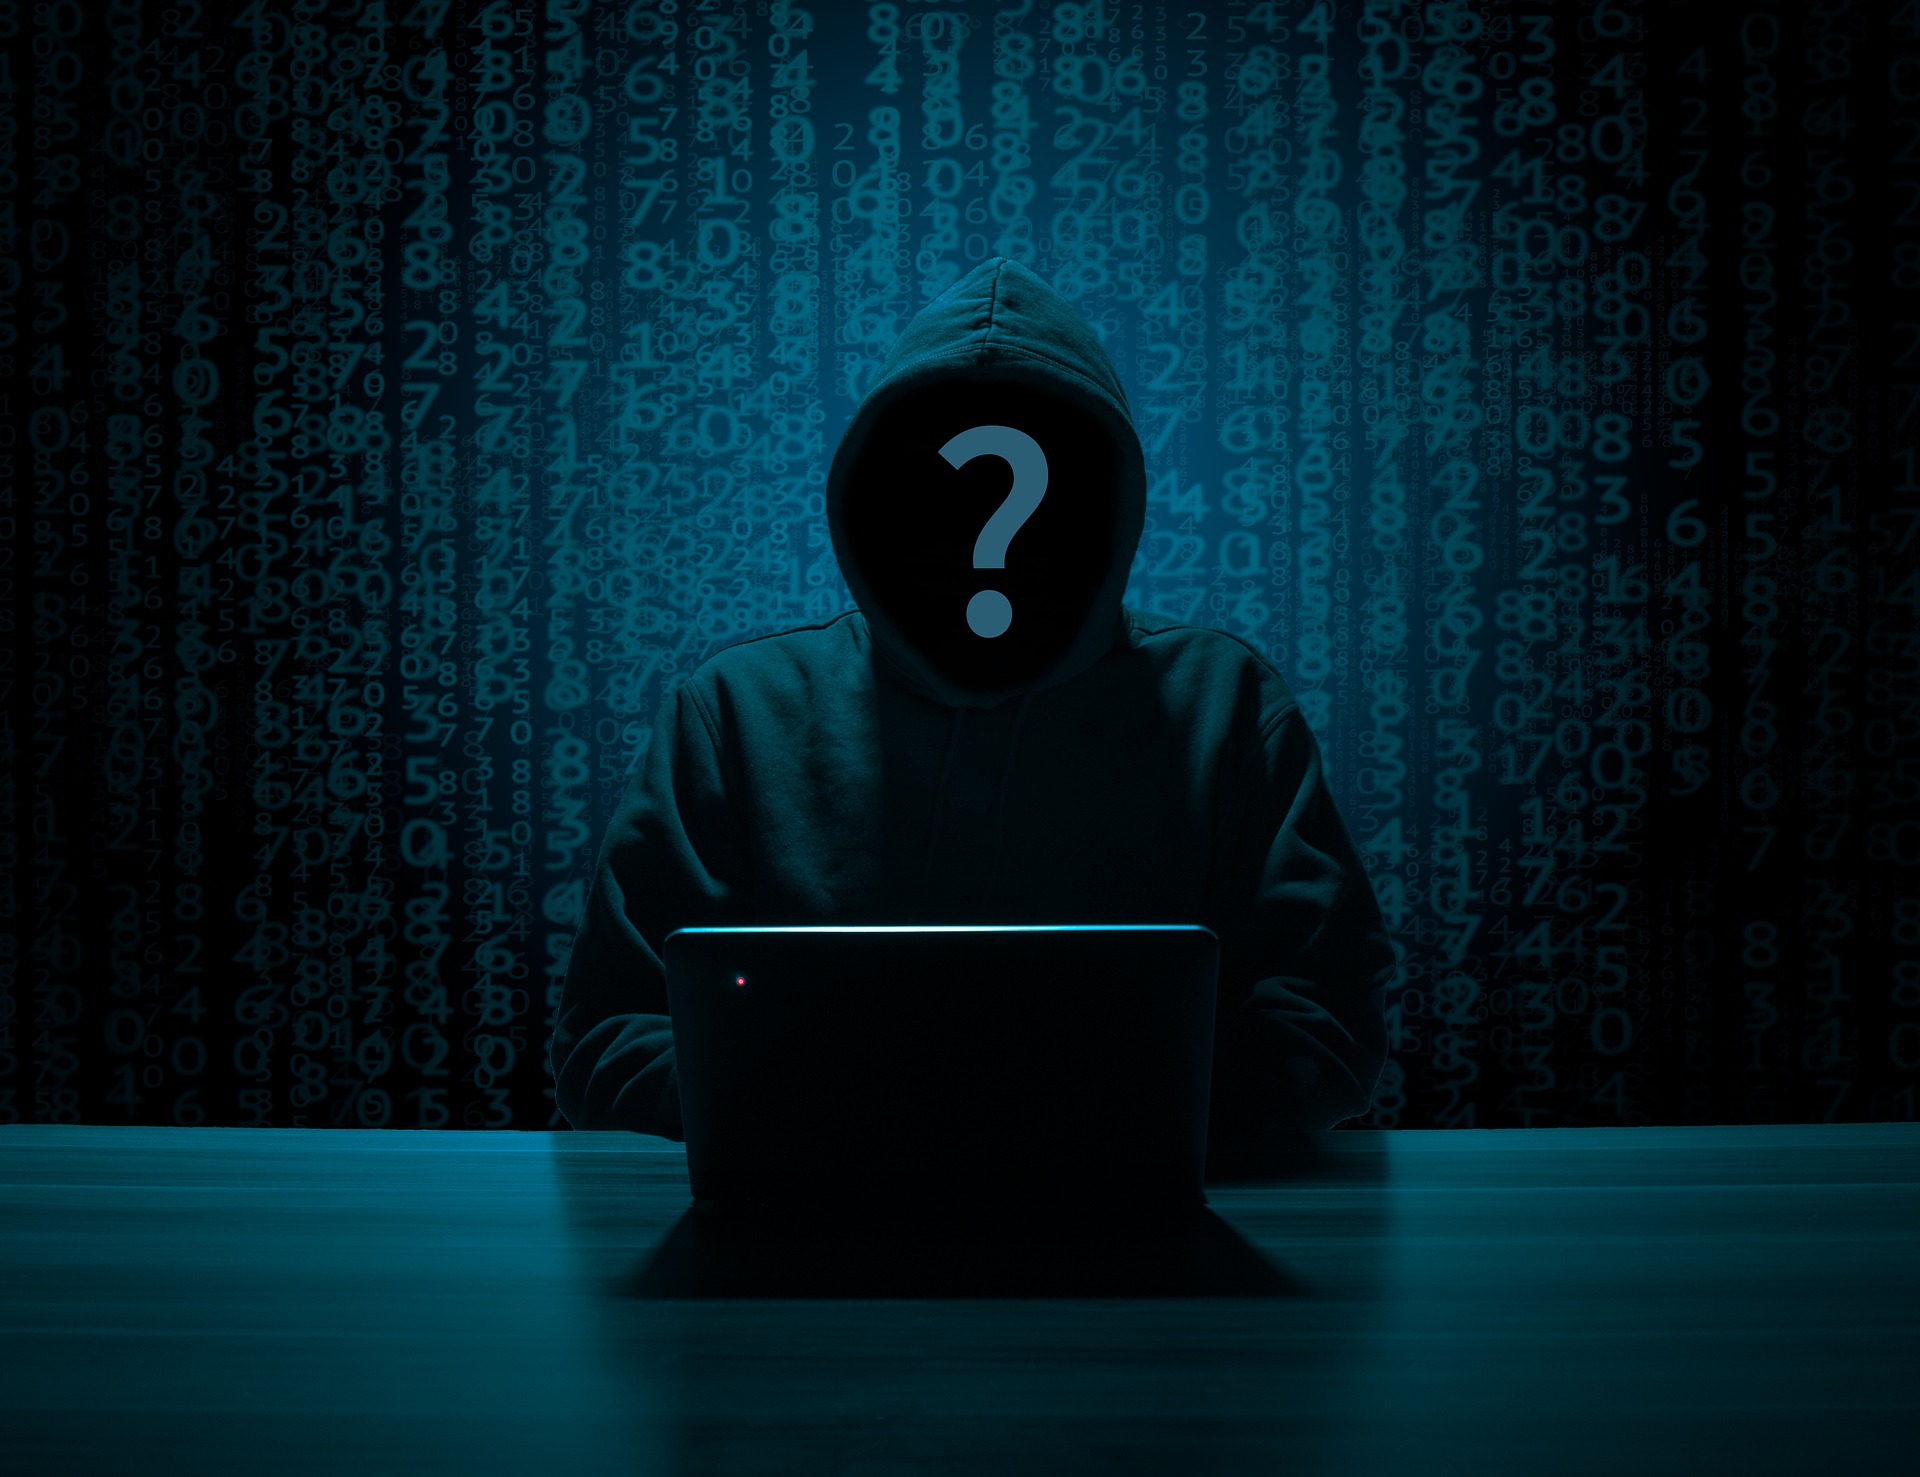 Famoso pirata informatico offre 100mila$ ad altri hacker per nuovi attacchi.